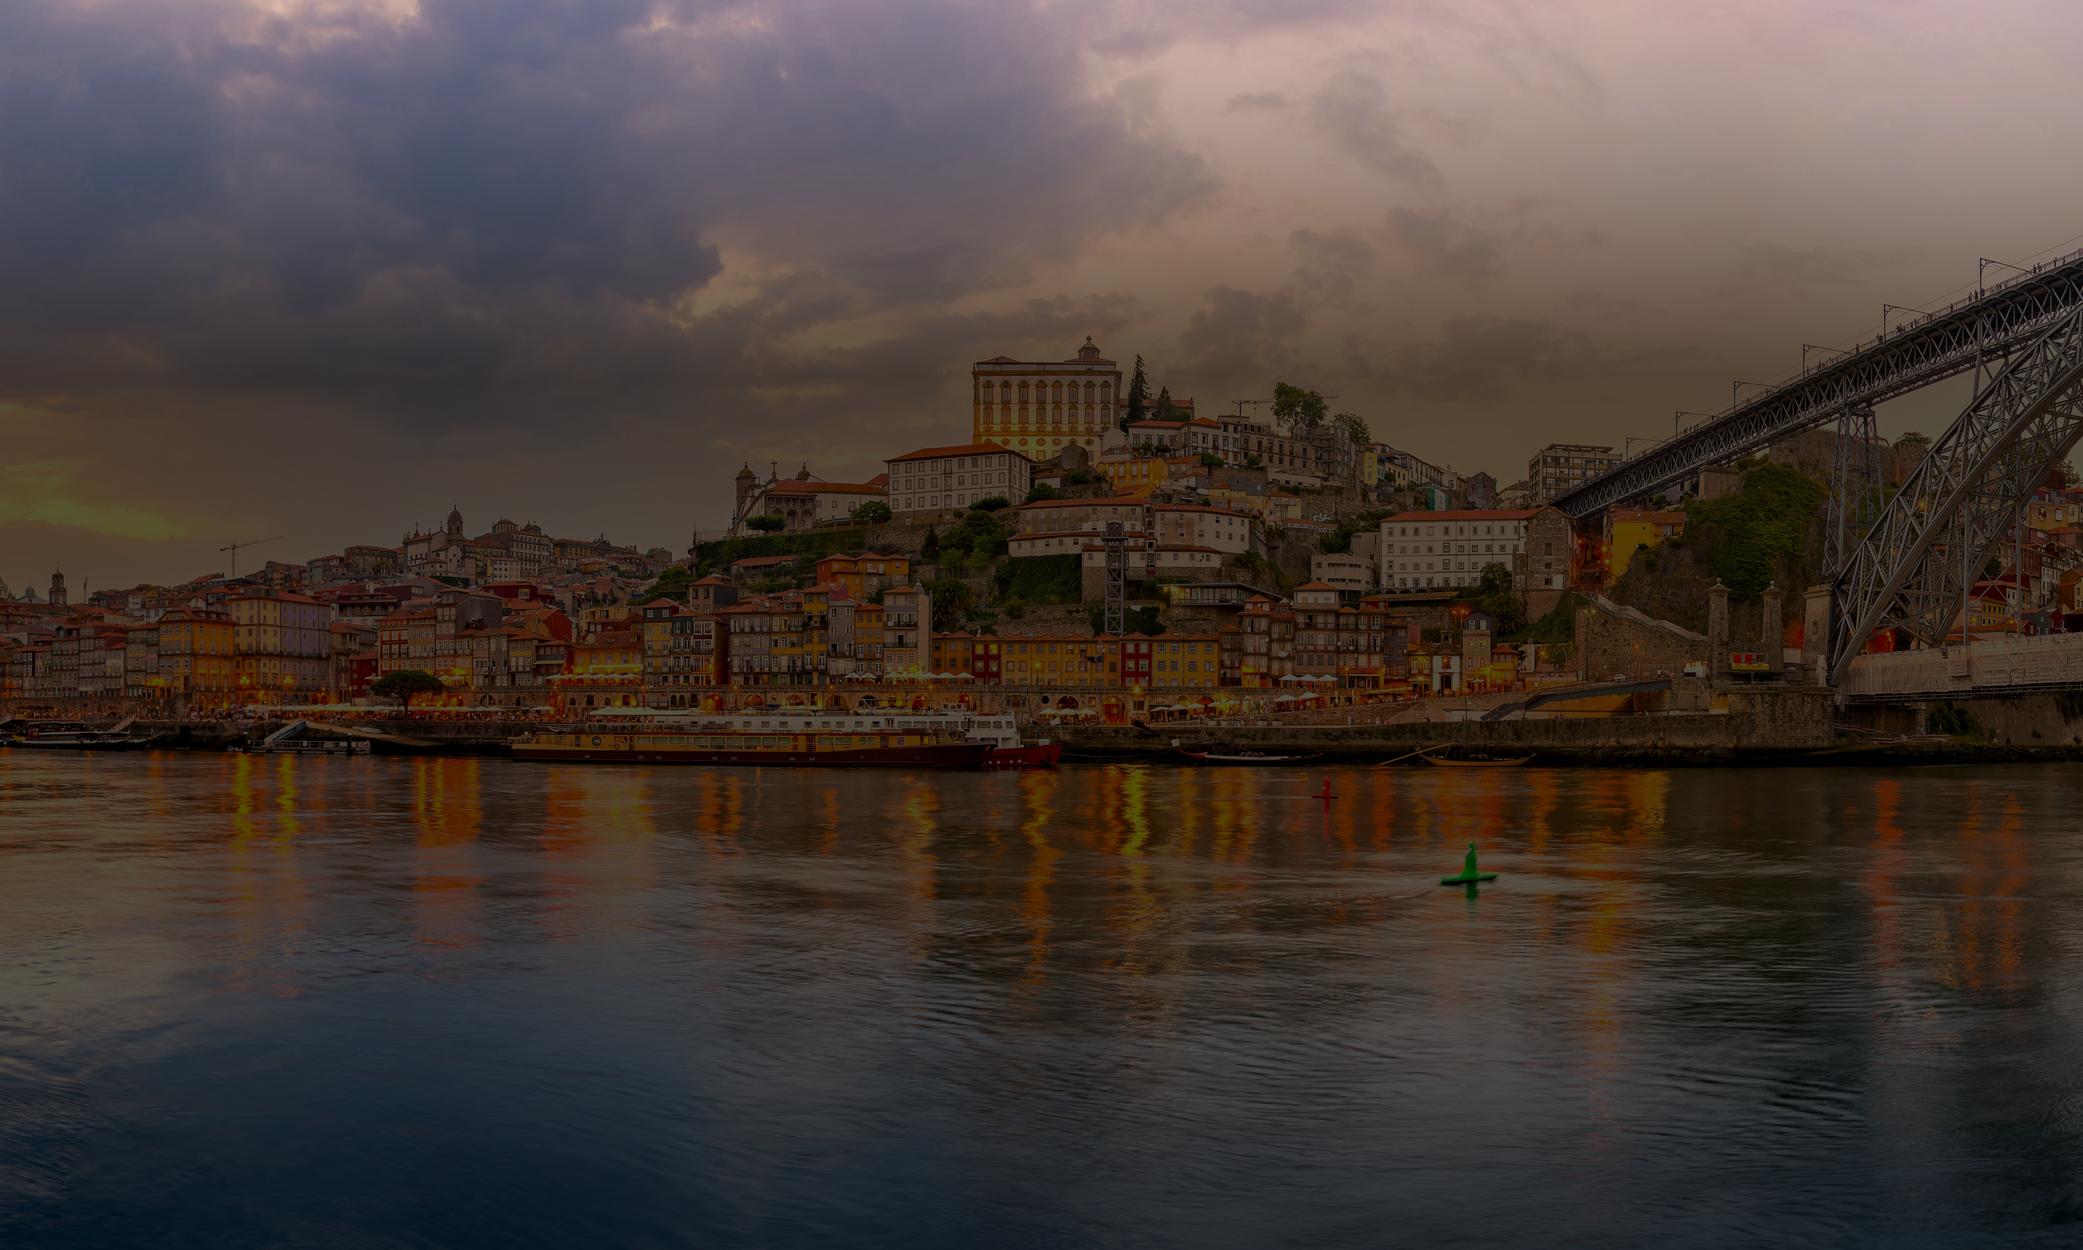 Золотая виза Португалии, скорее всего, продолжит свою работу с изменениями